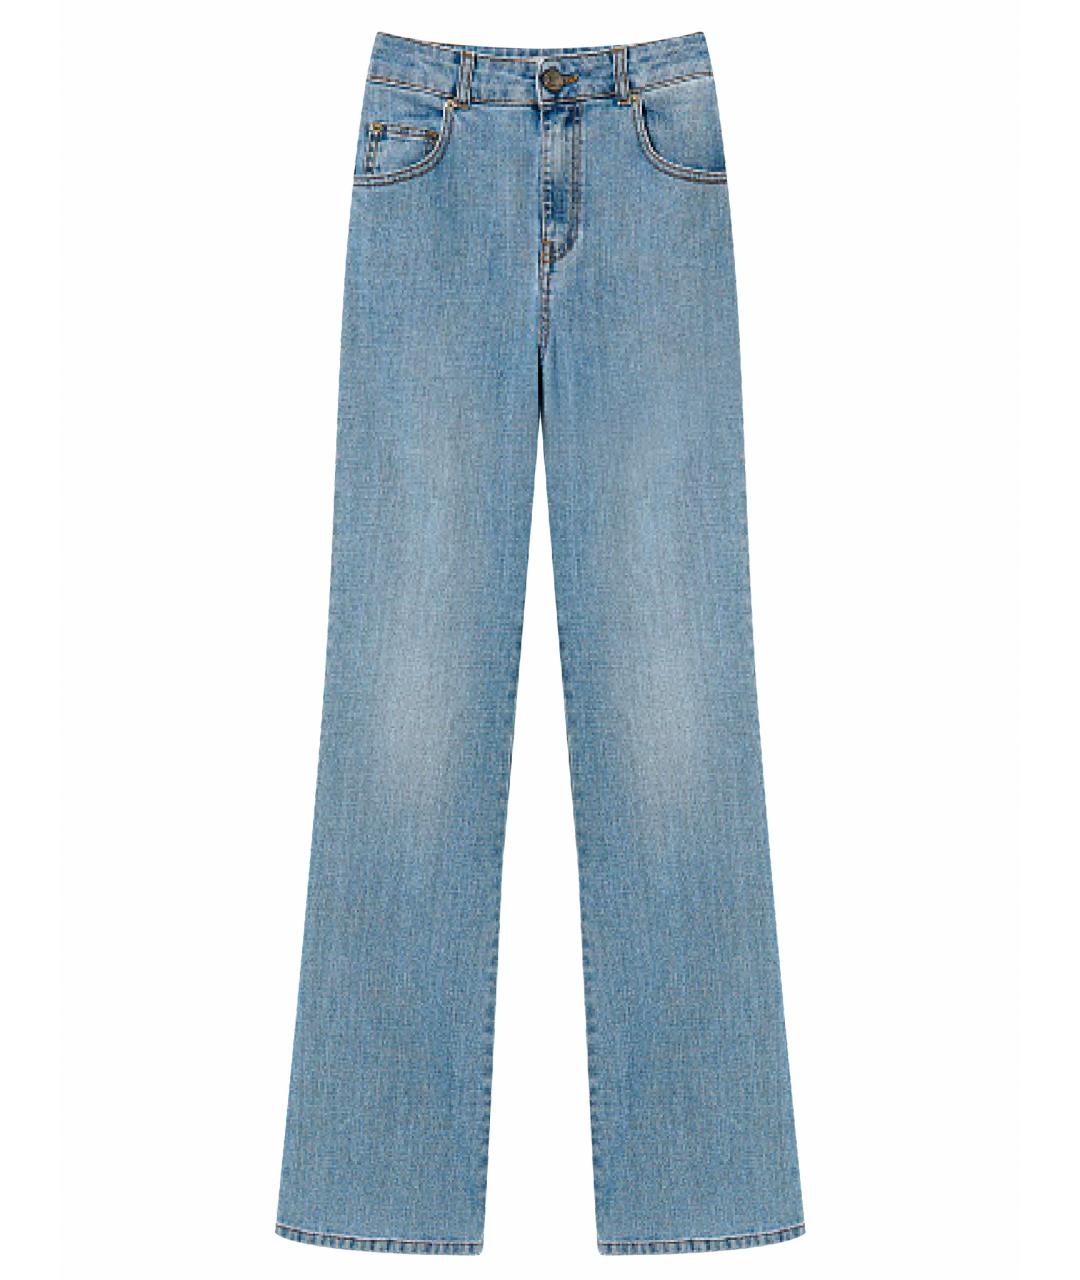 TWIN-SET Синие хлопковые прямые джинсы, фото 1